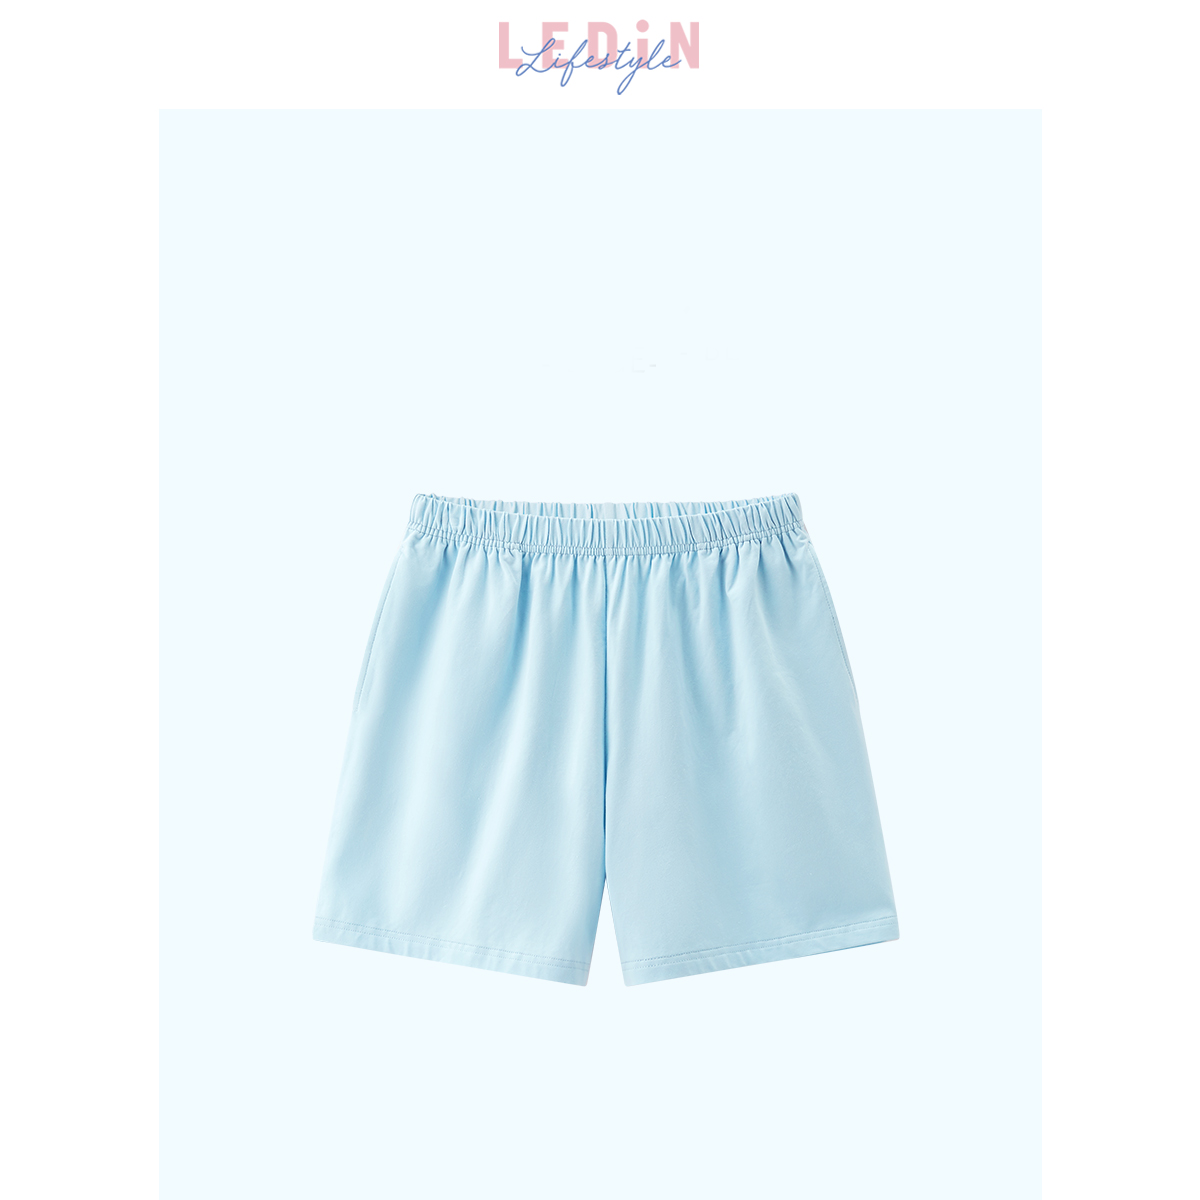 Solid Color Pajama Shorts Loose Casual Shorts